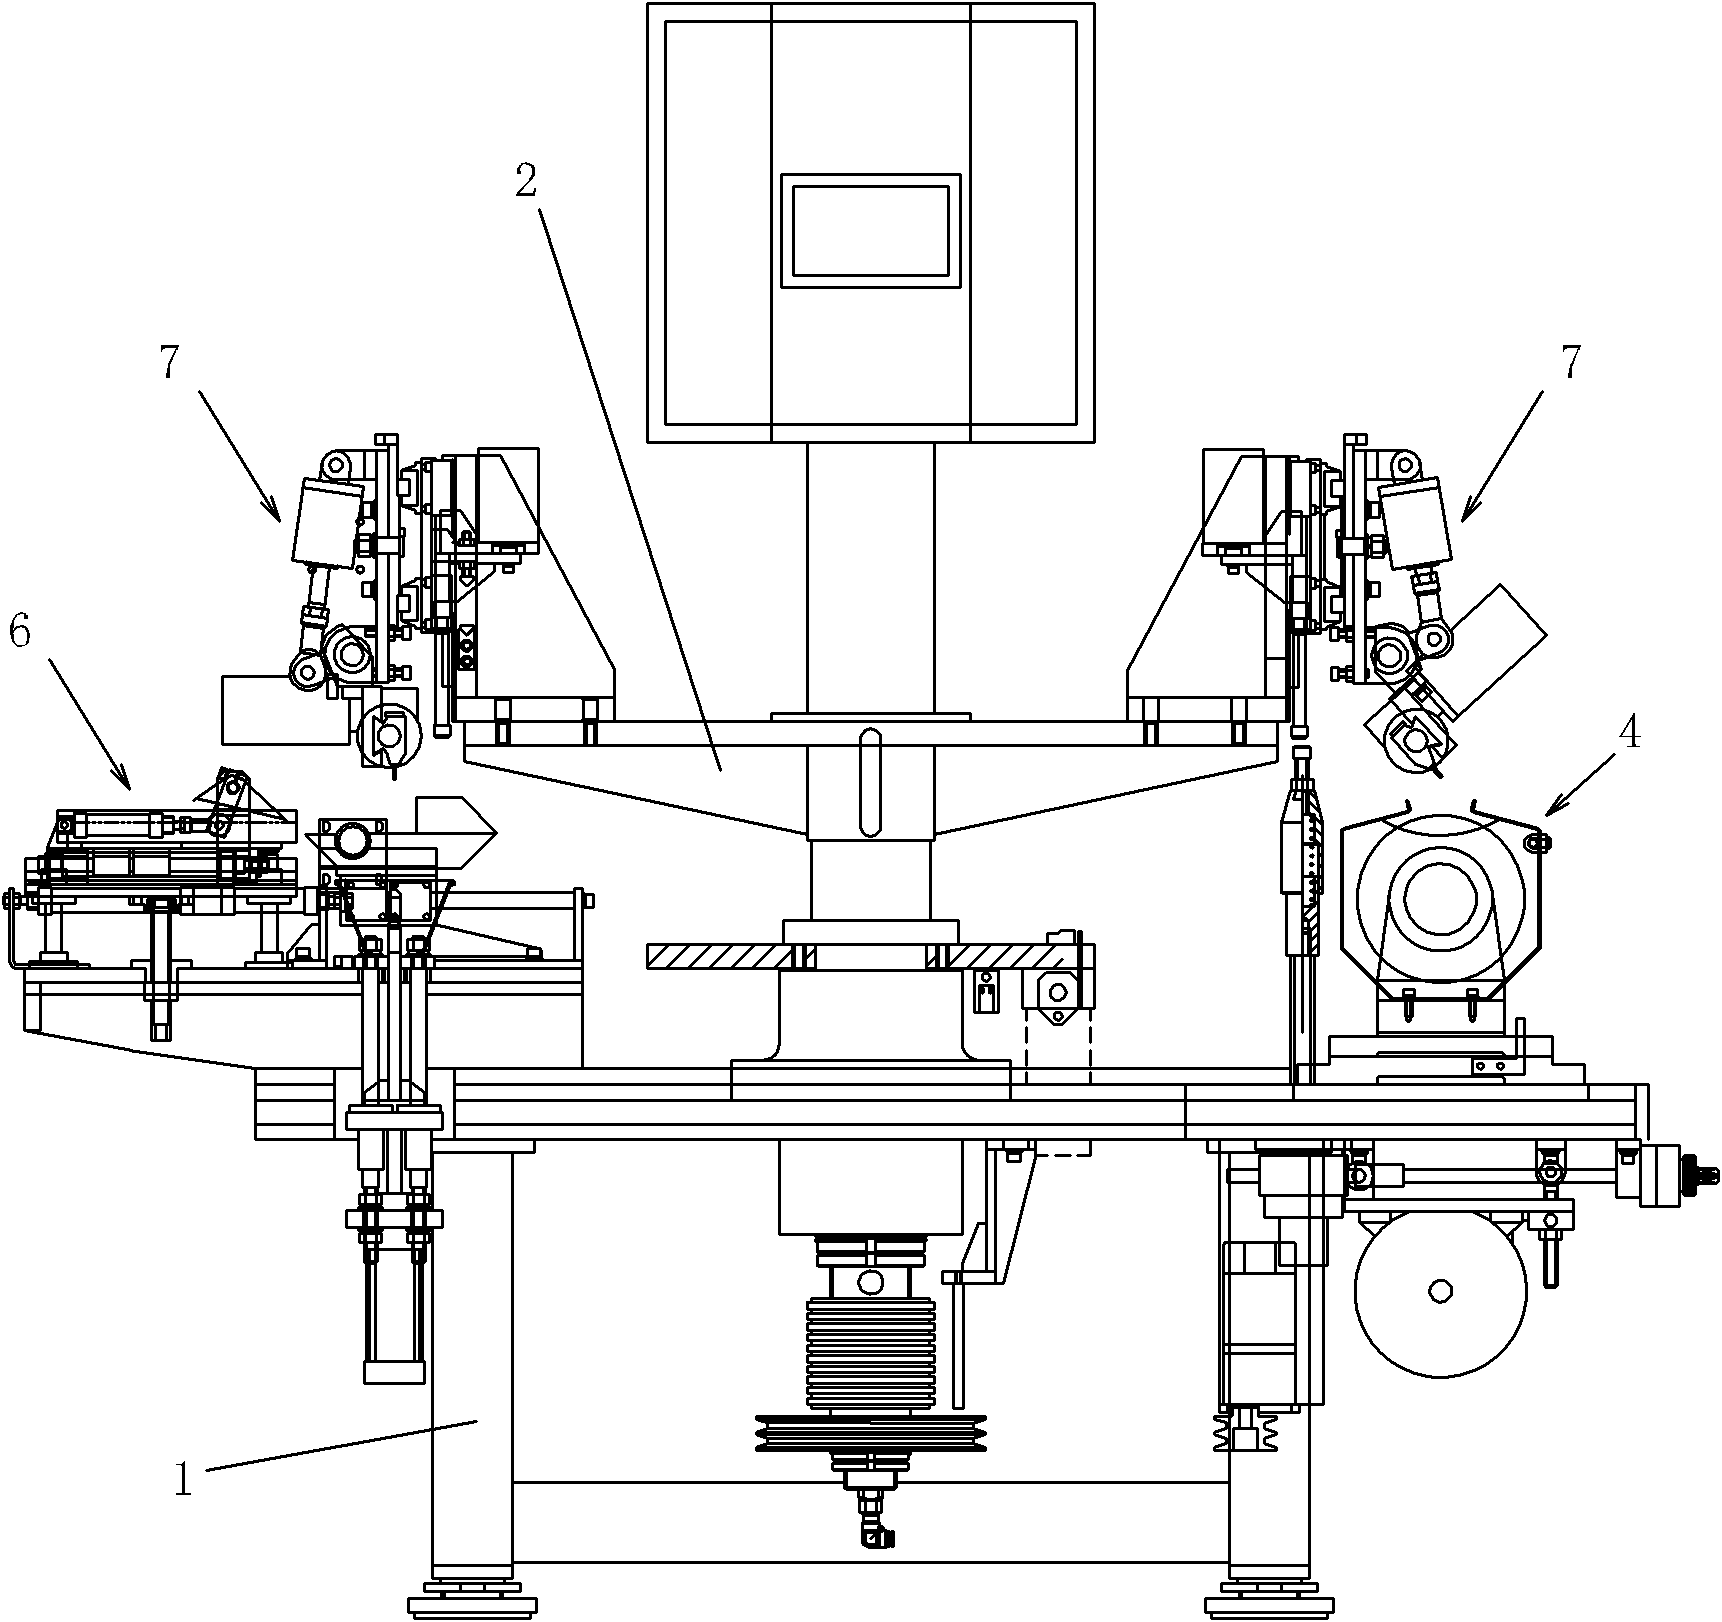 Multi-station rhinestone slant grinding and polishing machine